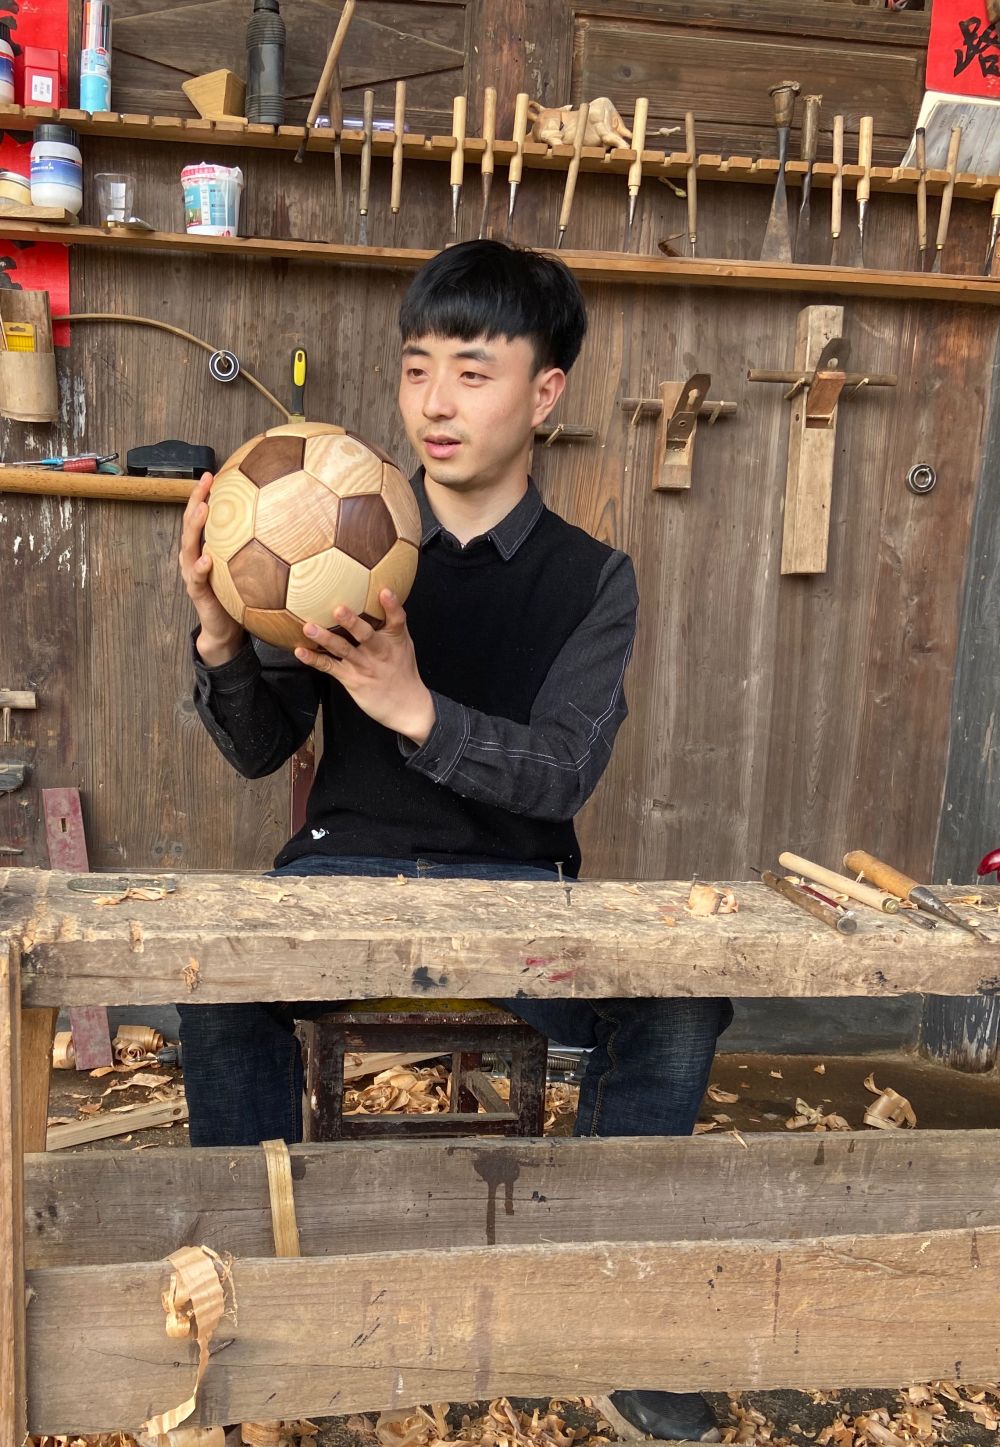 安旭展示他用木头做的足球。（采访对象供图）.jpg